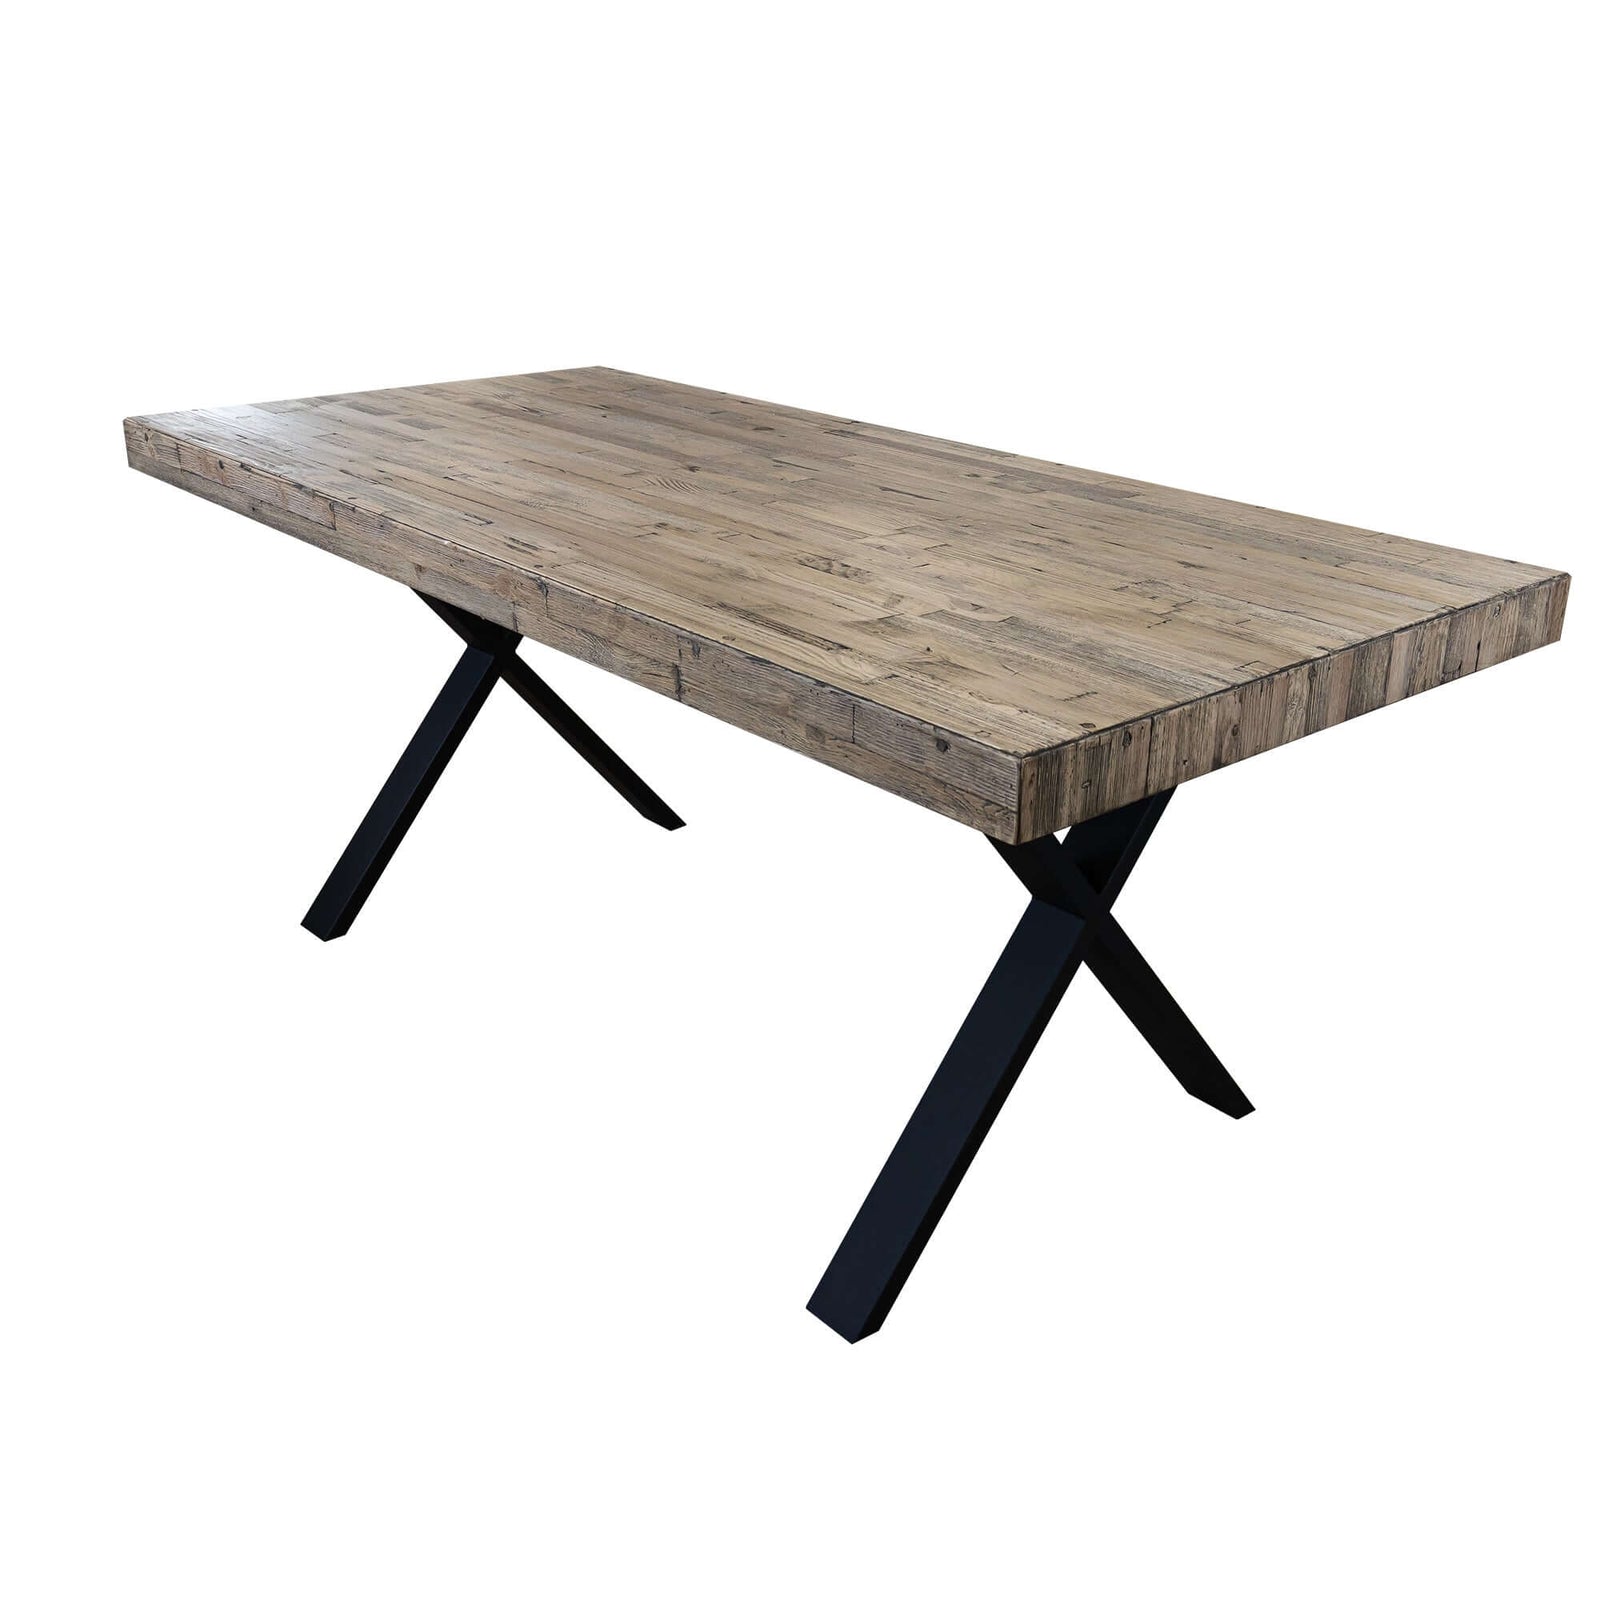 Anika Dining Table 180cm Laminated Solid Pine Top Metal Leg - Smoke-Upinteriors